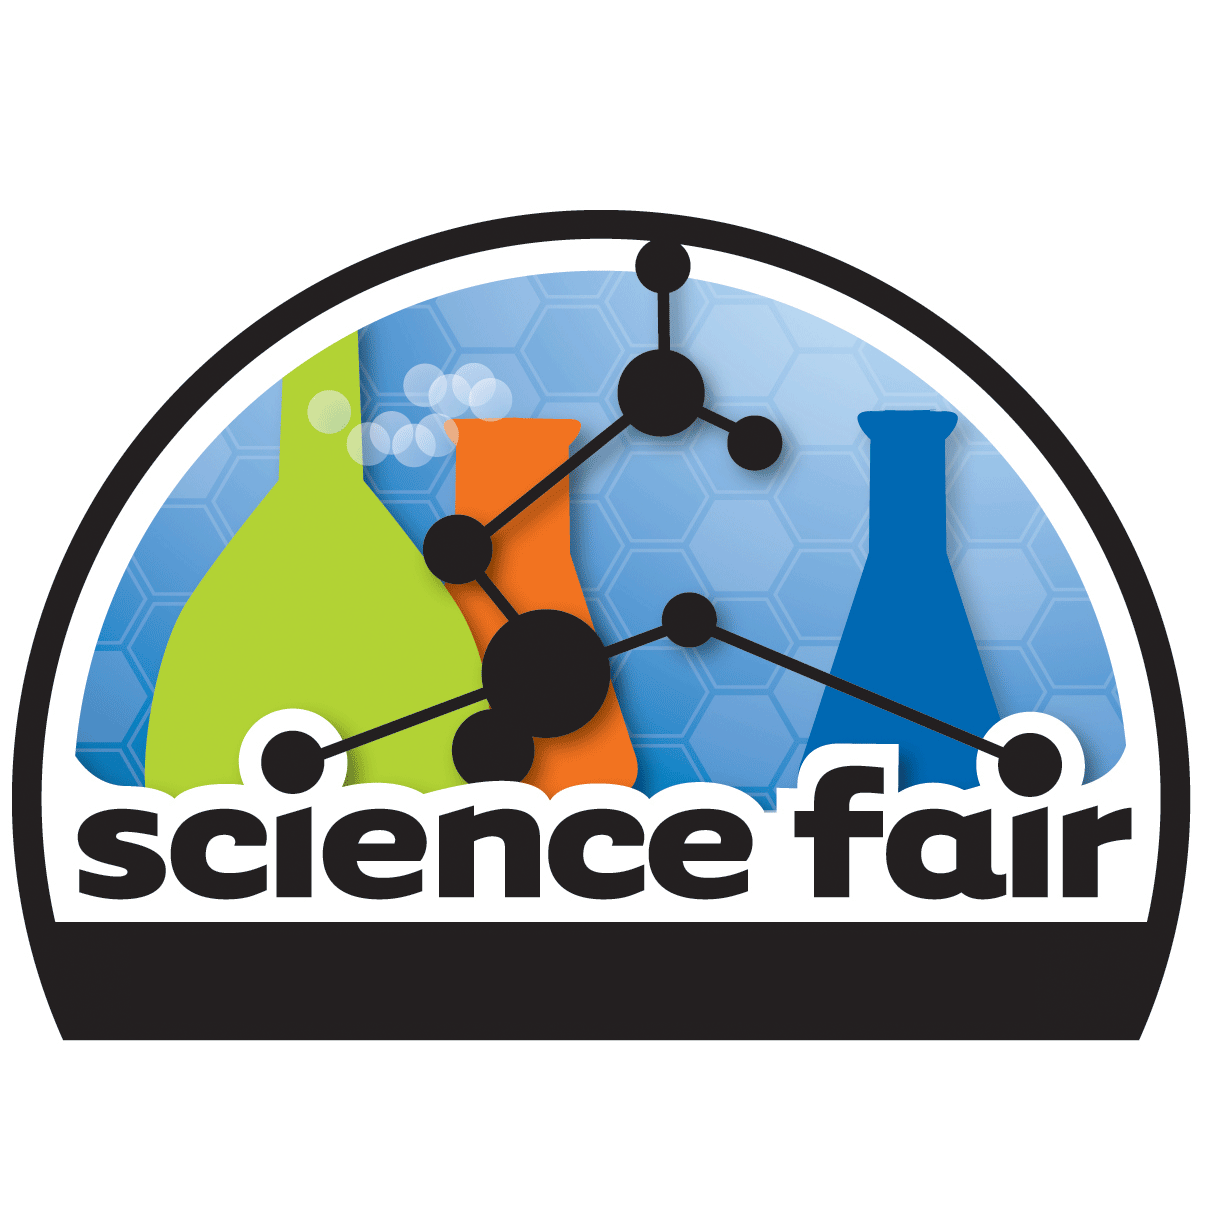 Filename: science_fair.png